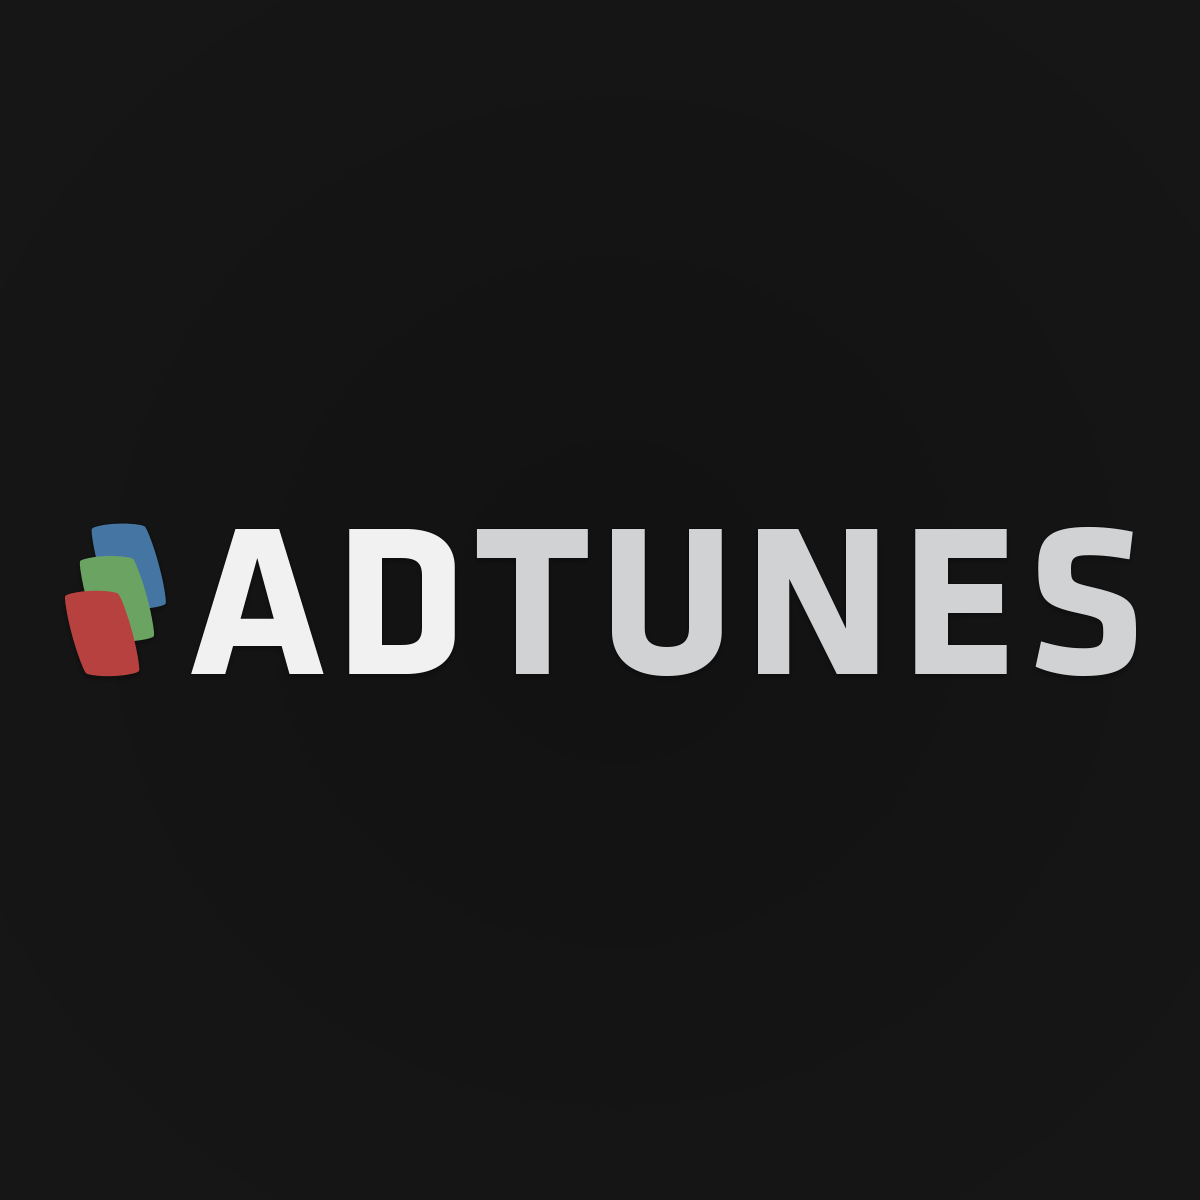 adtunes-logo-og.png